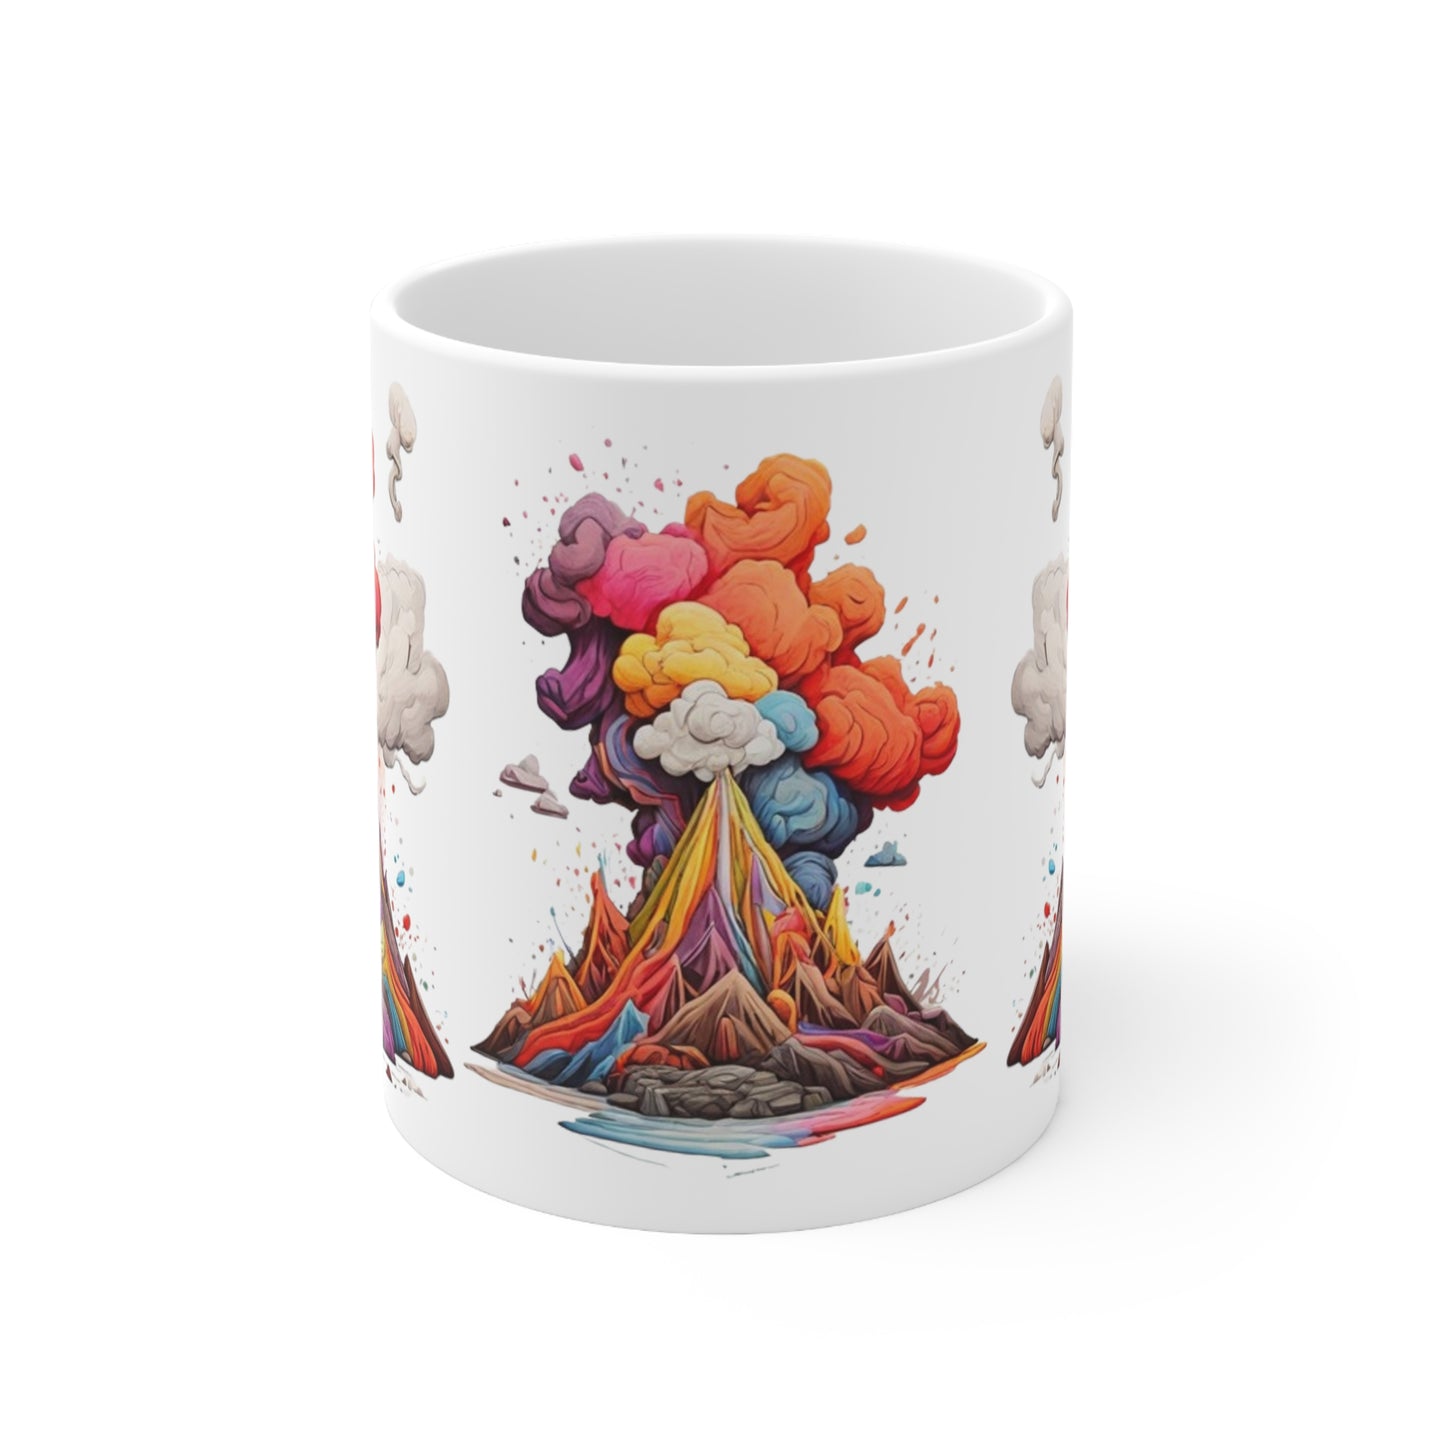 Colourful Messy Volcanos Mug - Ceramic Coffee Mug 11oz